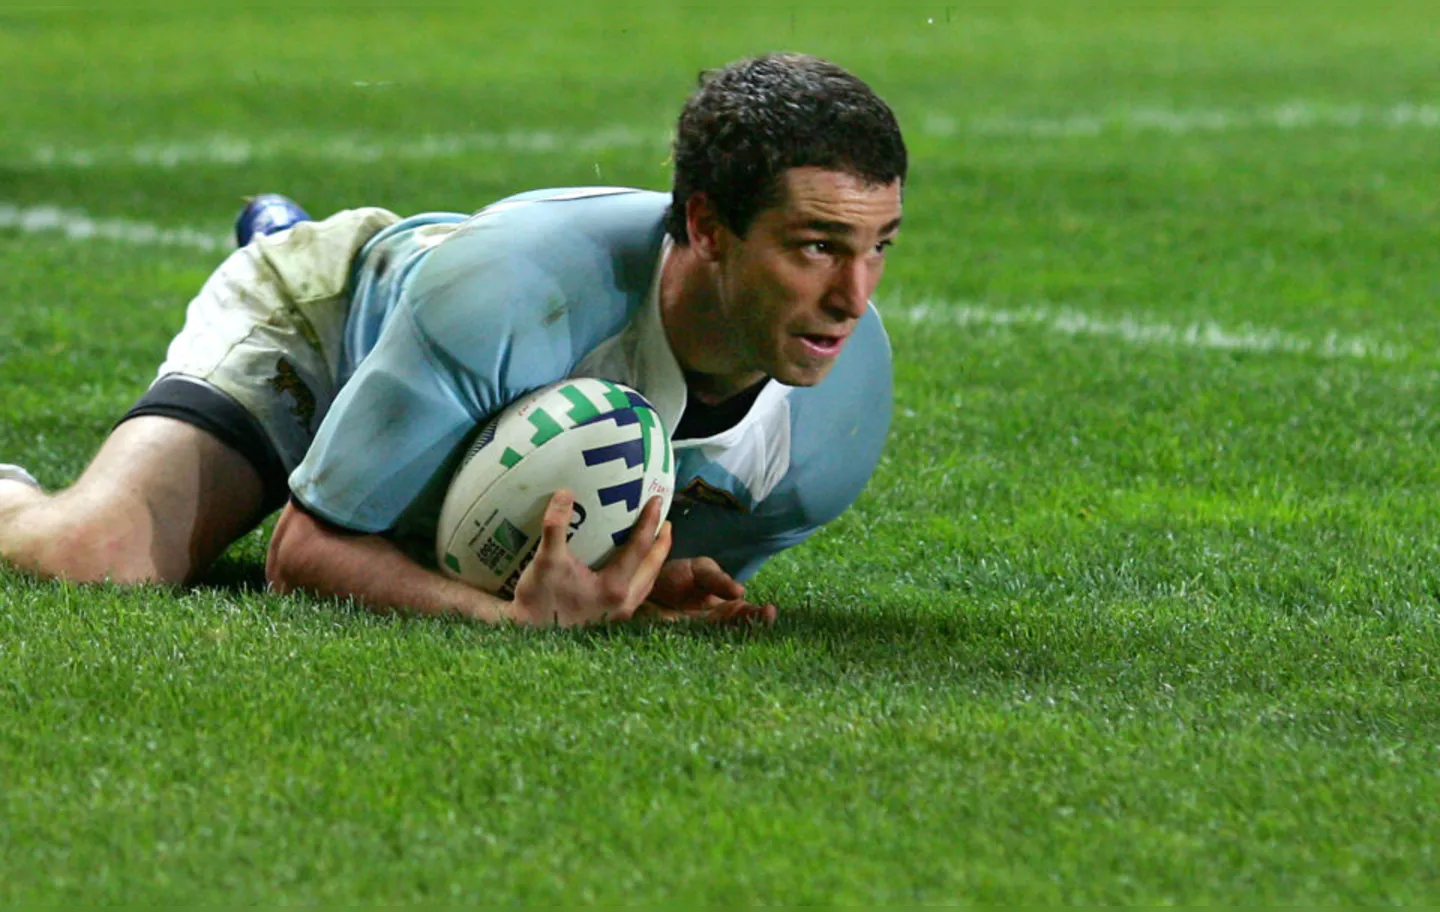 Aramburu também jogou pela seleção argentina em 22 ocasiões e disputou a Copa do Mundo